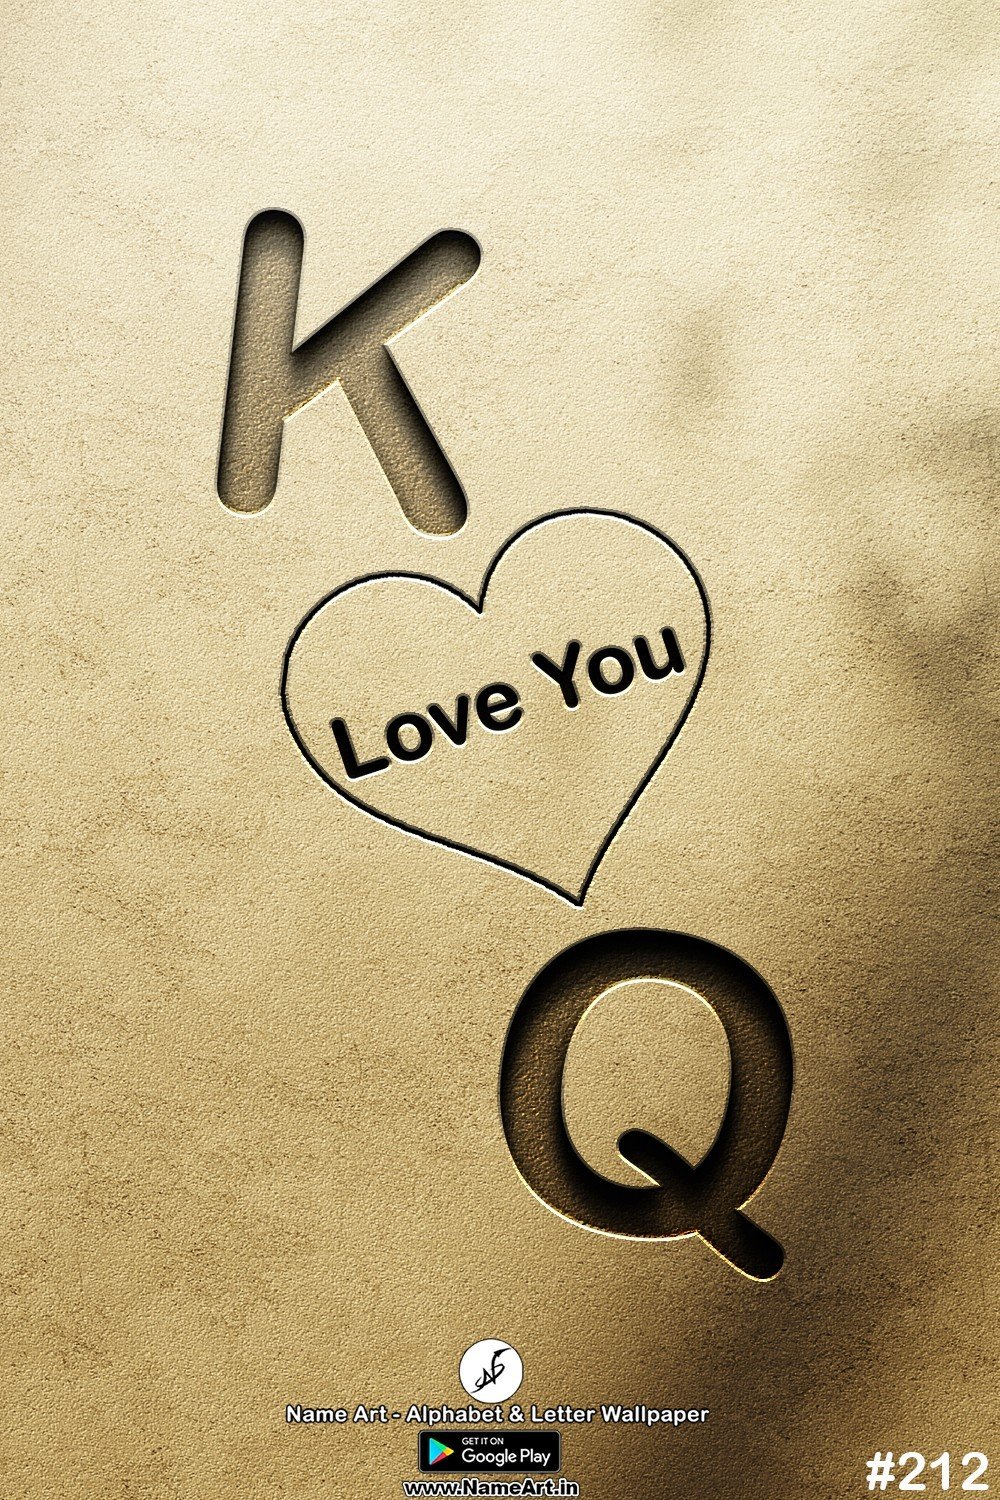 KQ | Whatsapp Status DP KQ | KQ Love Status Cute Couple Whatsapp Status DP !! | New Whatsapp Status DP KQ Images |